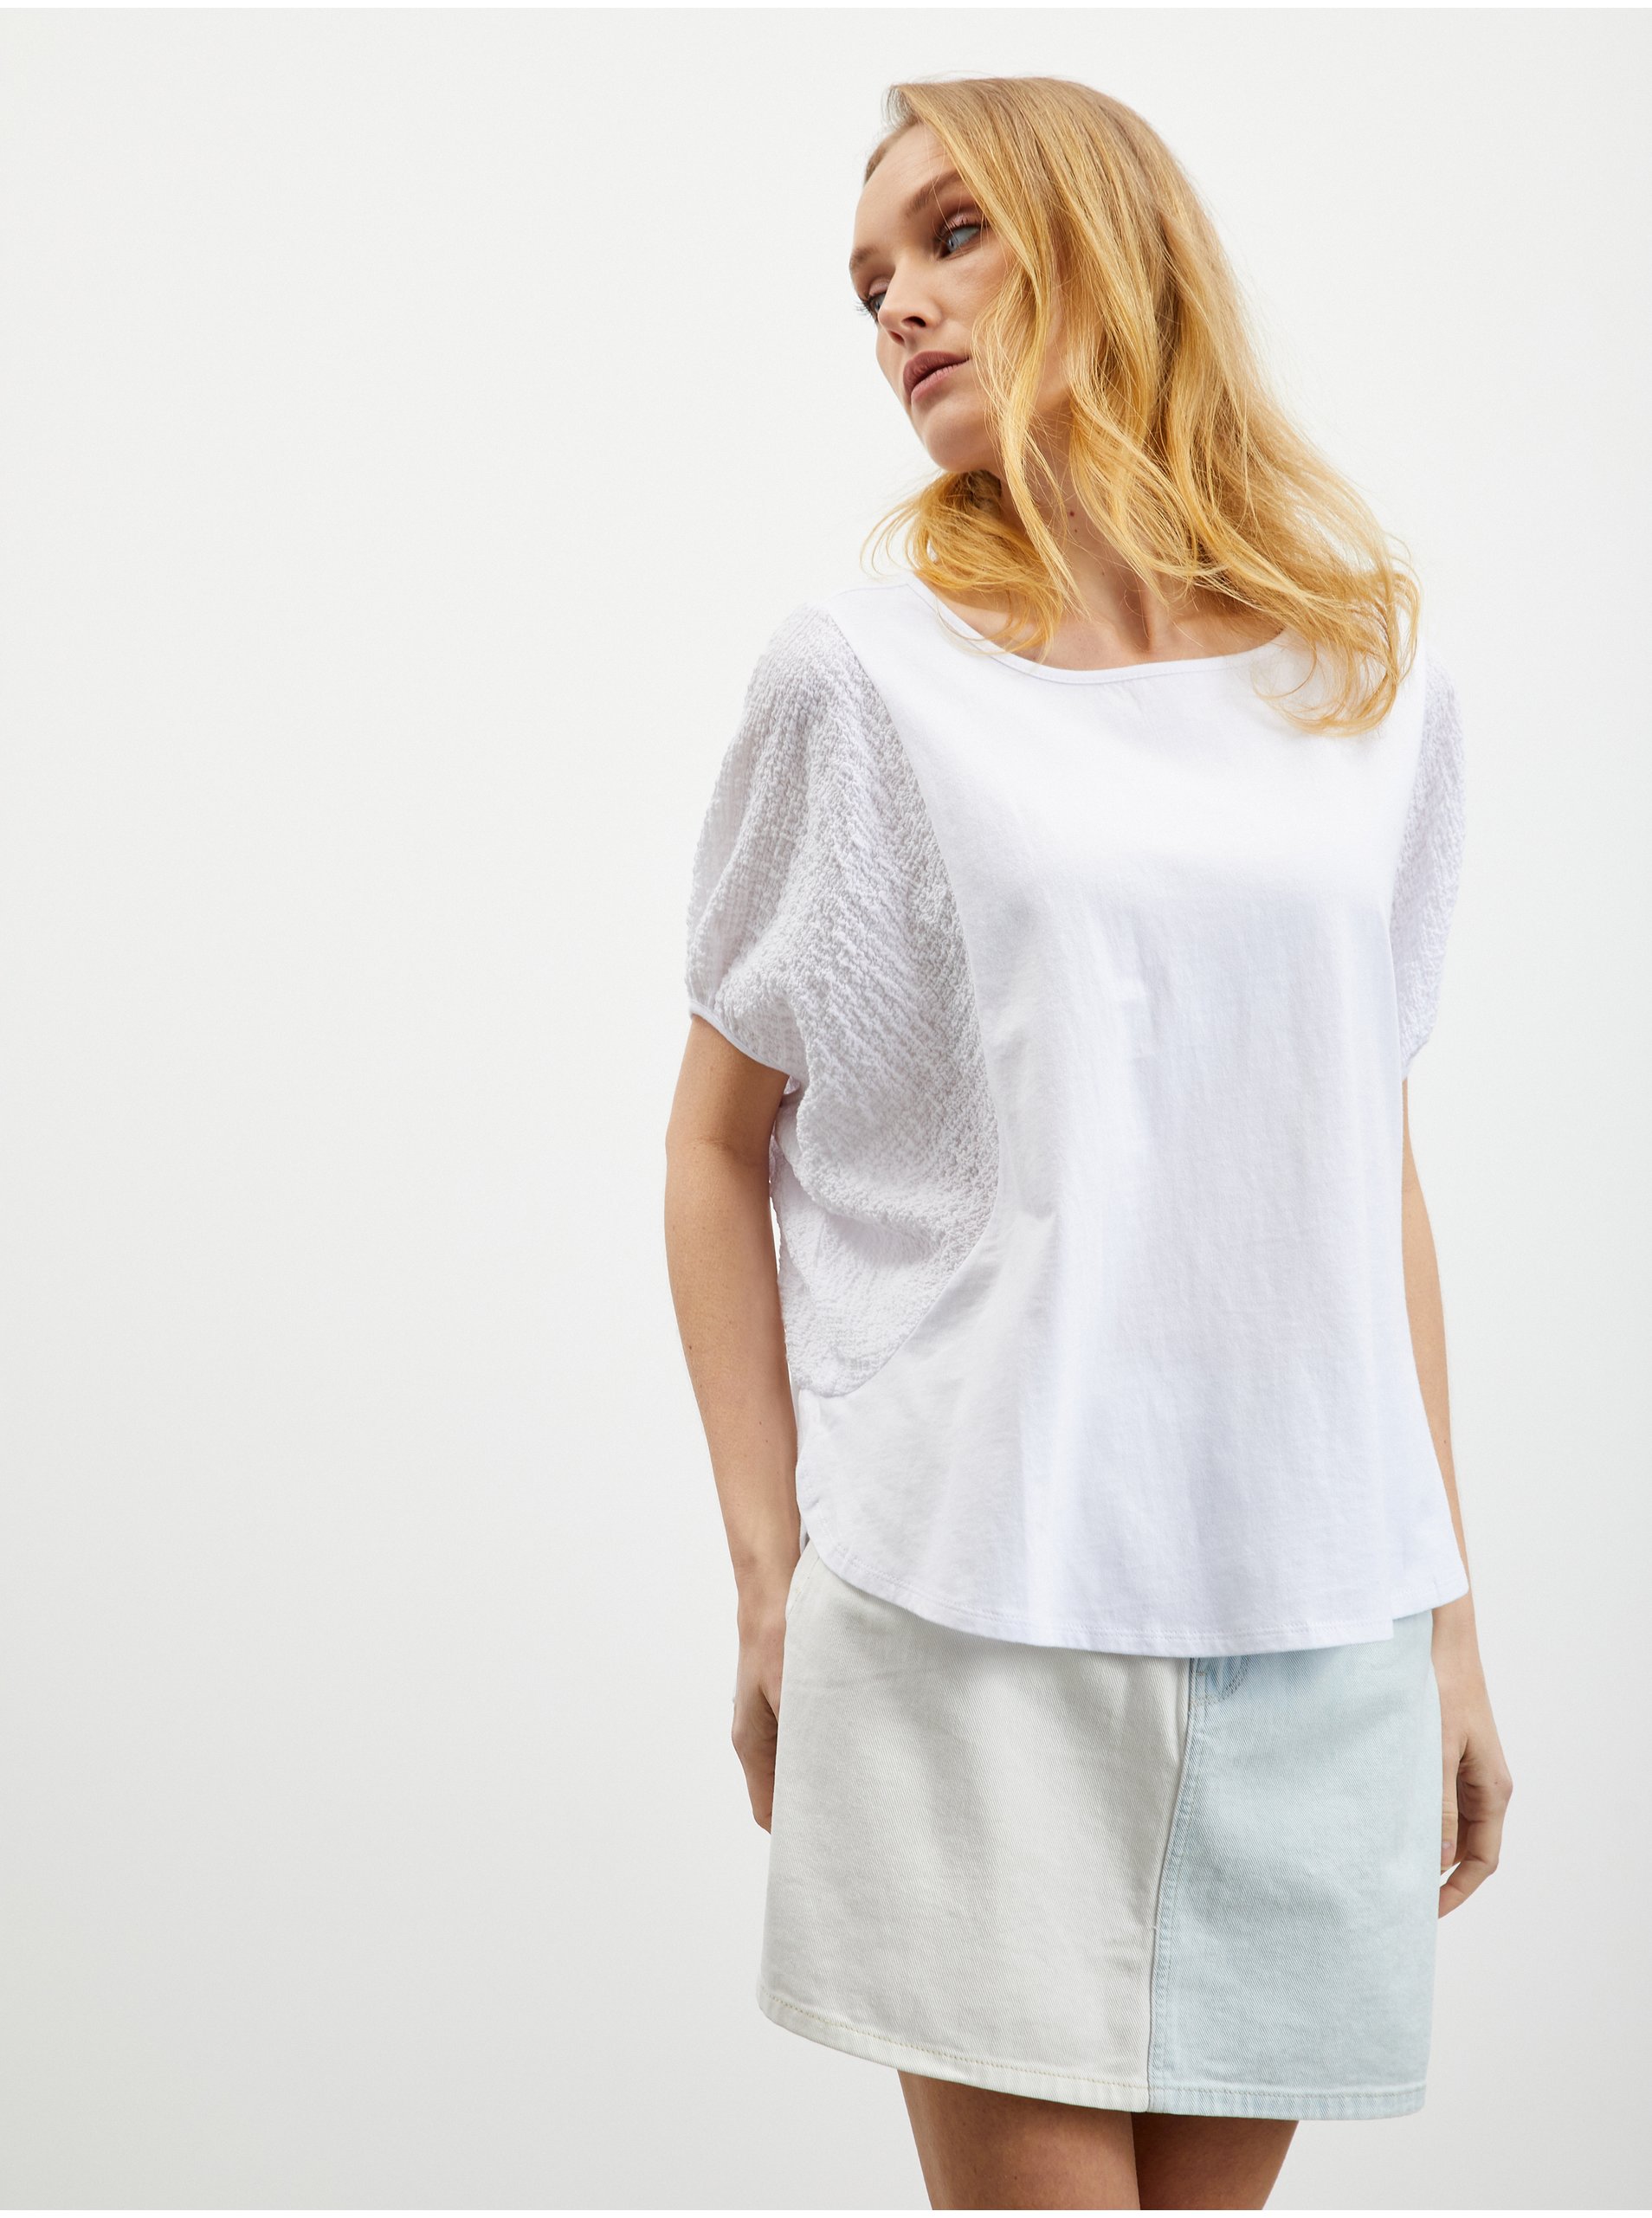 E-shop Bílé dámské oversize tričko ZOOT.lab Kayla